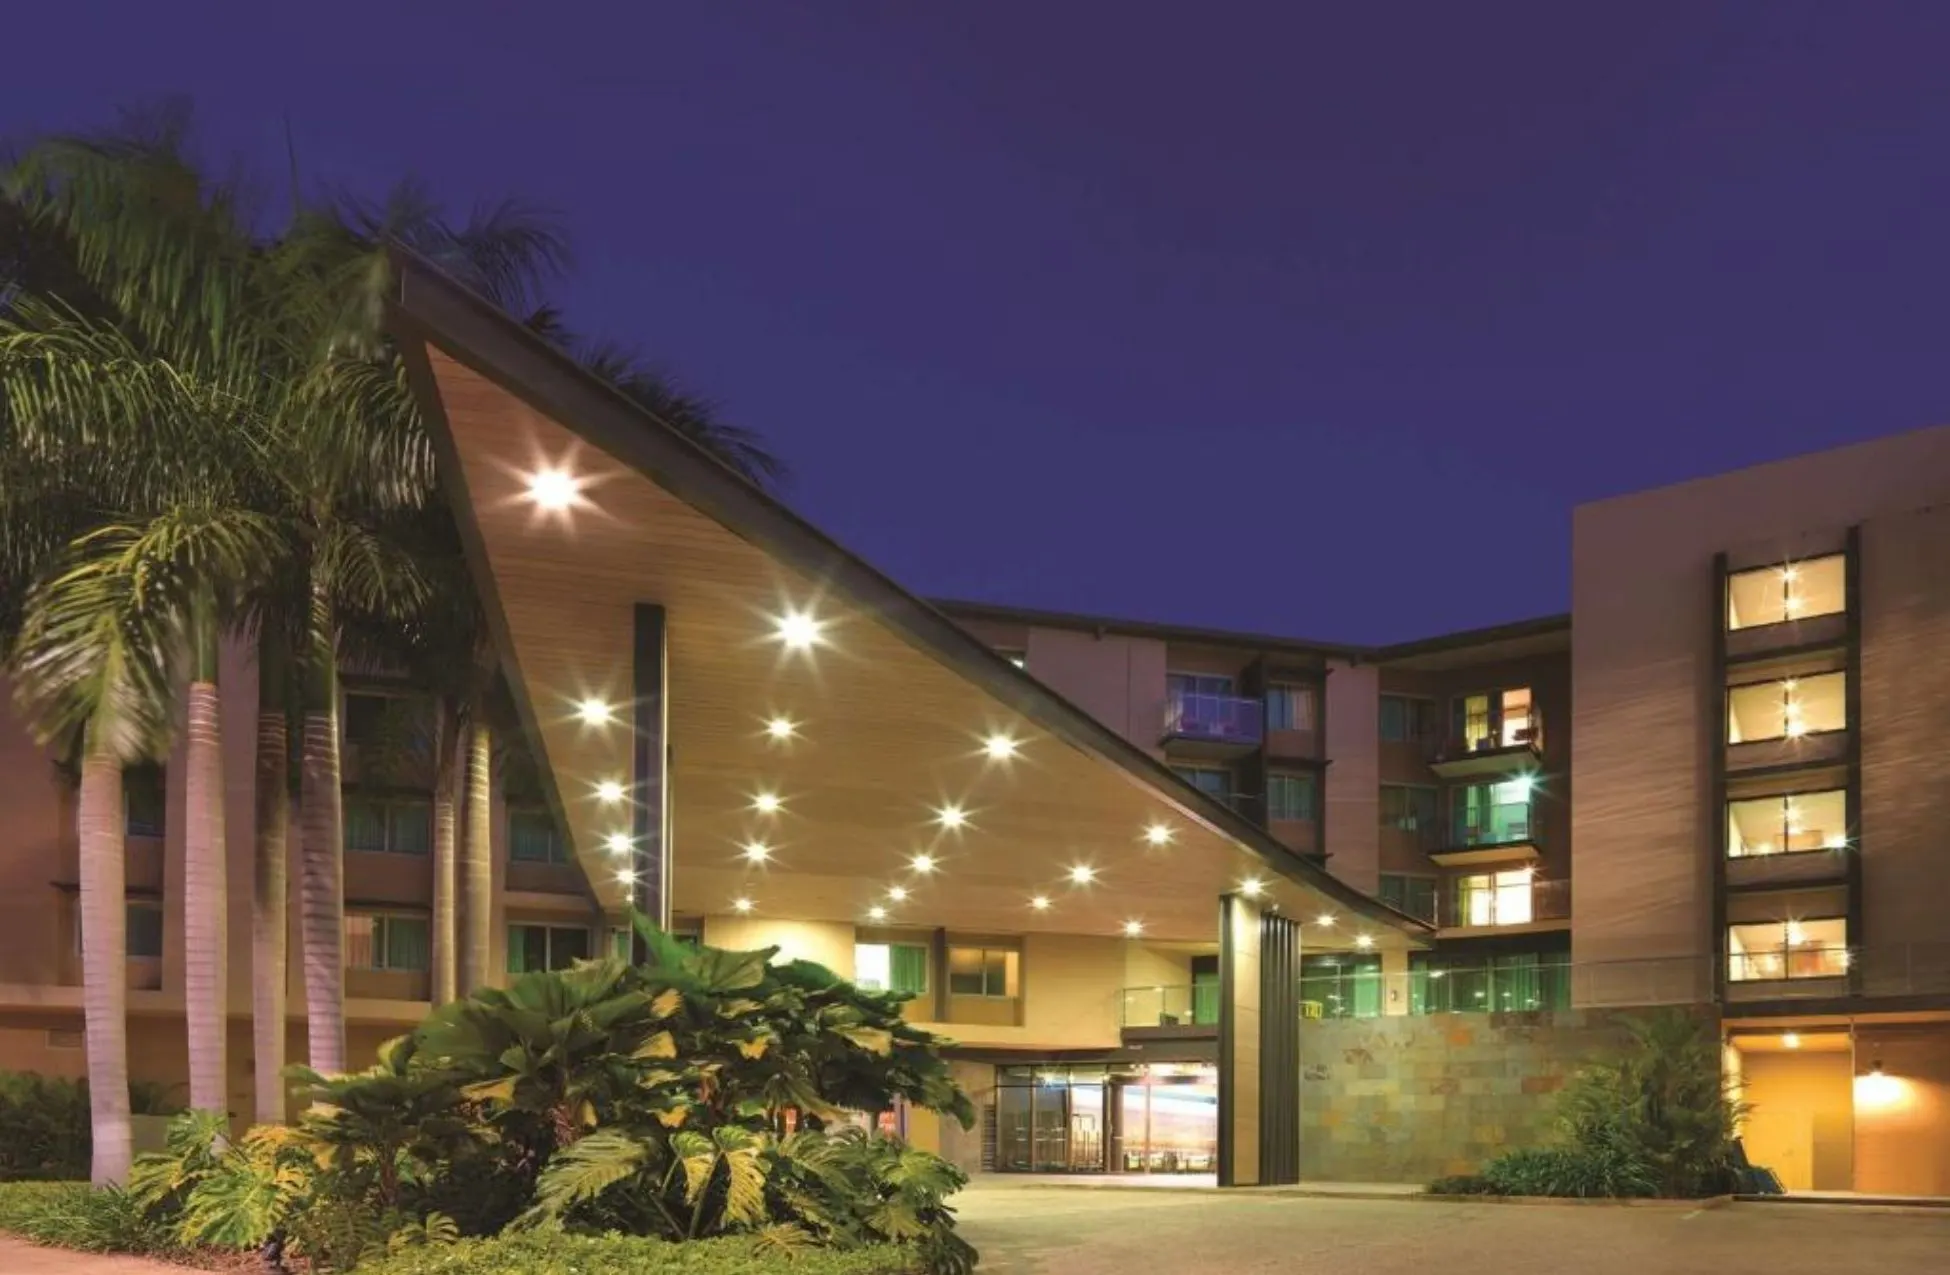 Vibe Hotel Darwin Waterfront - Best Hotels In Darwin